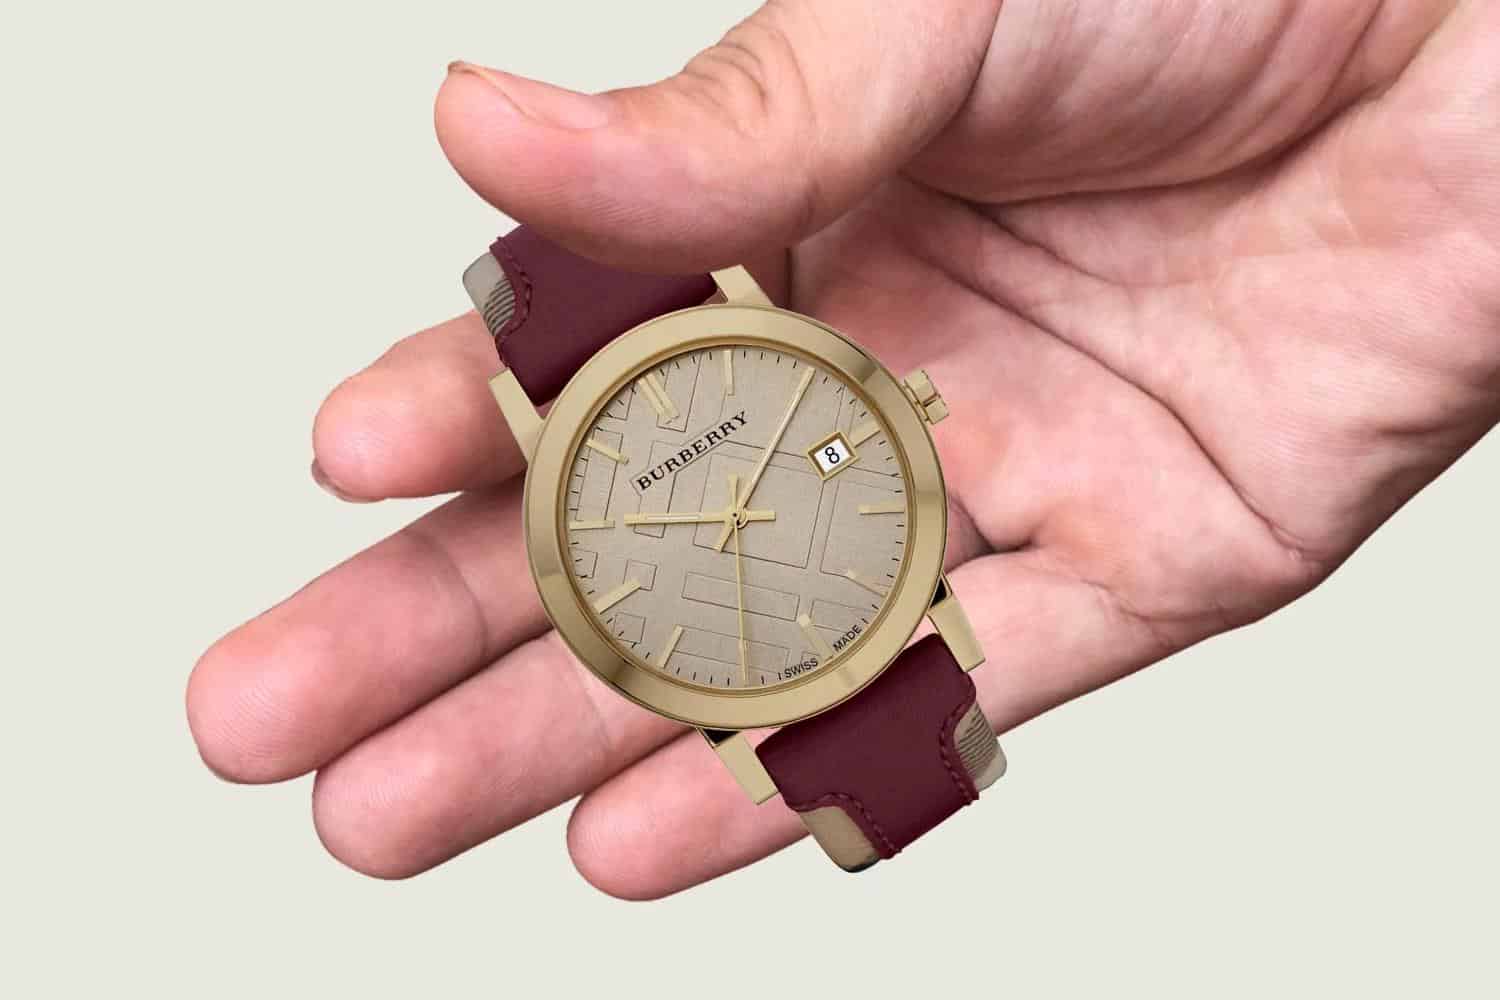 Đồng hồ Burberry chuẩn chính hãng có giá bao nhiêu?